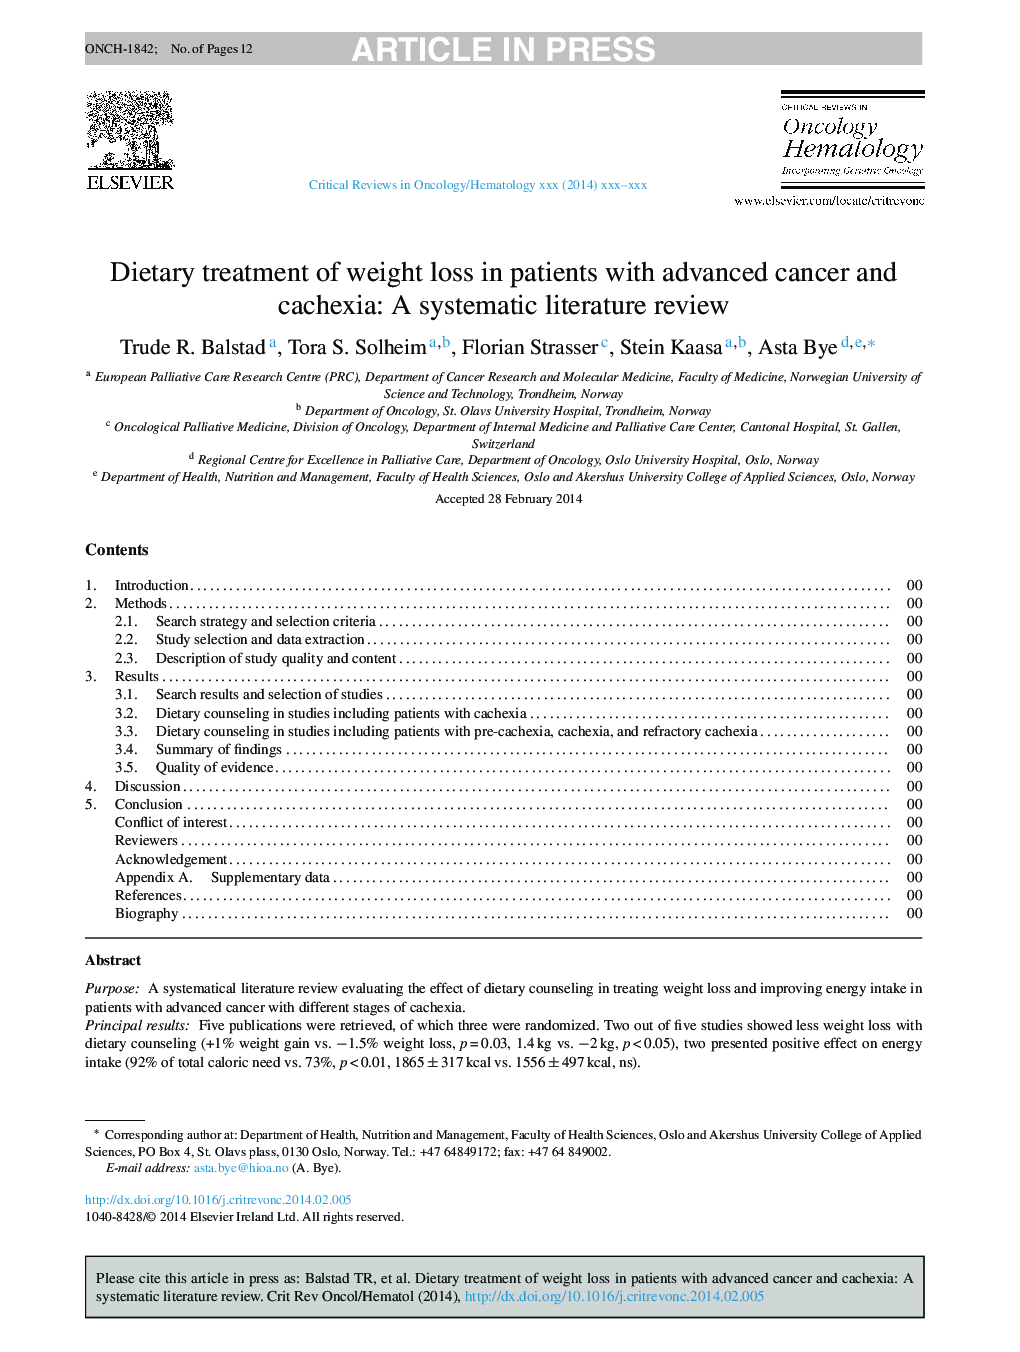 درمان رژیم غذایی کاهش وزن در بیماران مبتلا به سرطان پیشرفته و کششی: یک بررسی ادبی سیستماتیک 